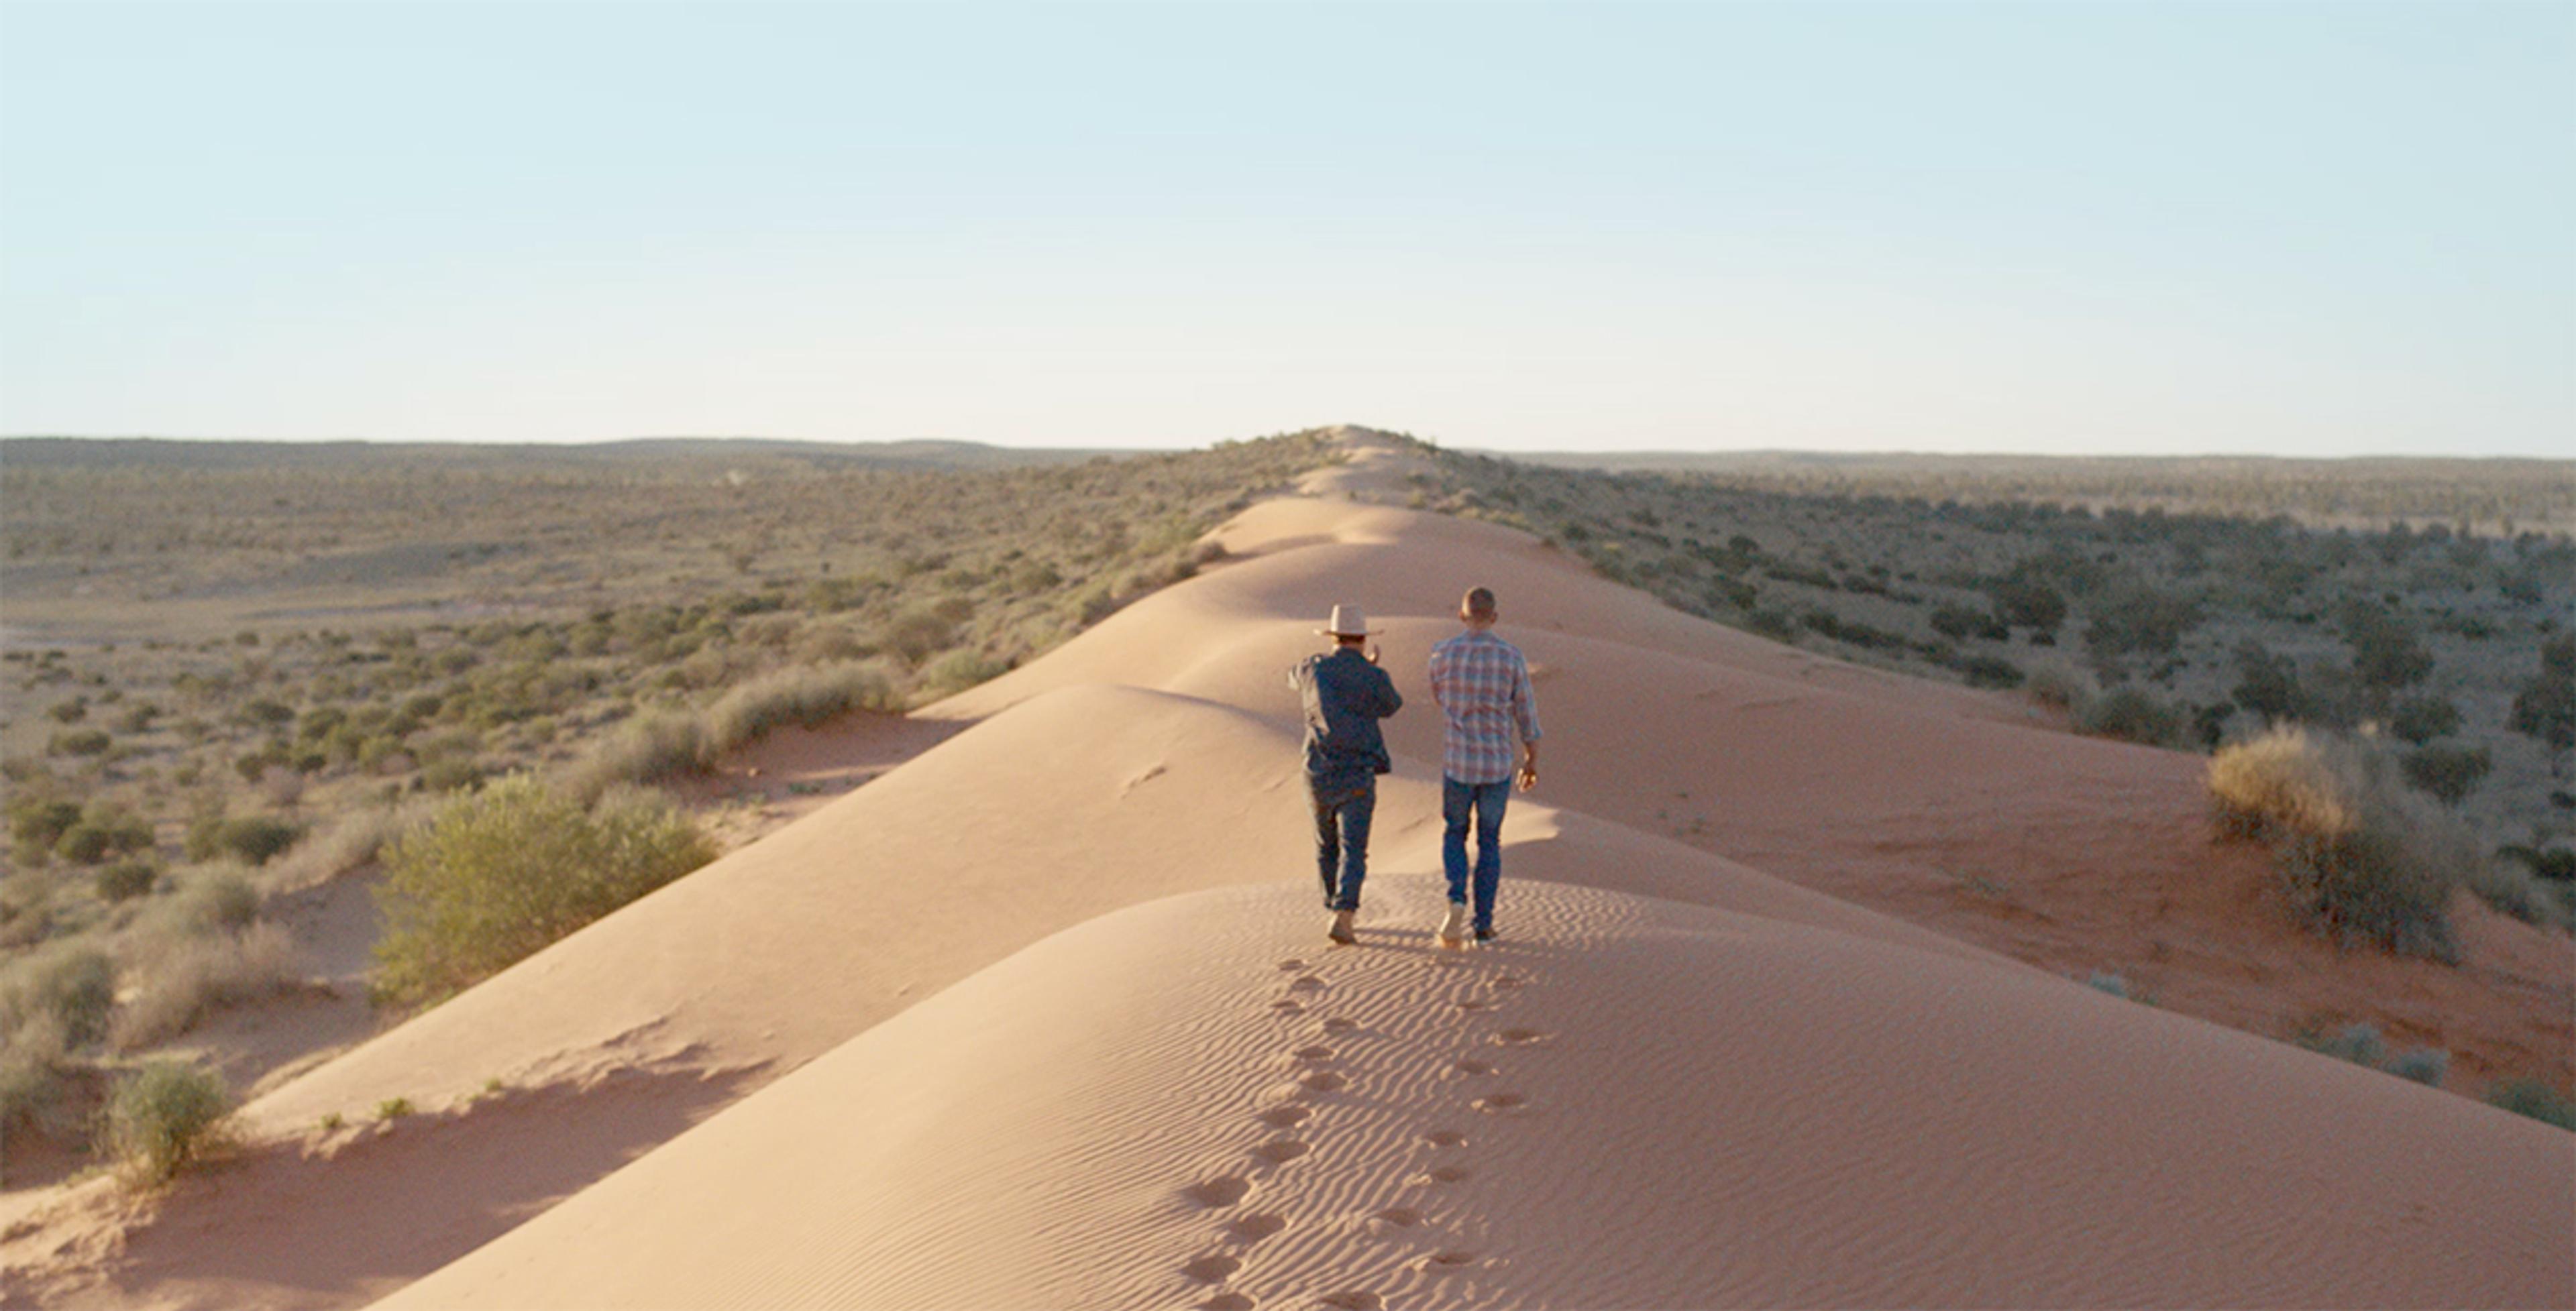 Two men walk along a sand dune rising up from the Australian grasslands.